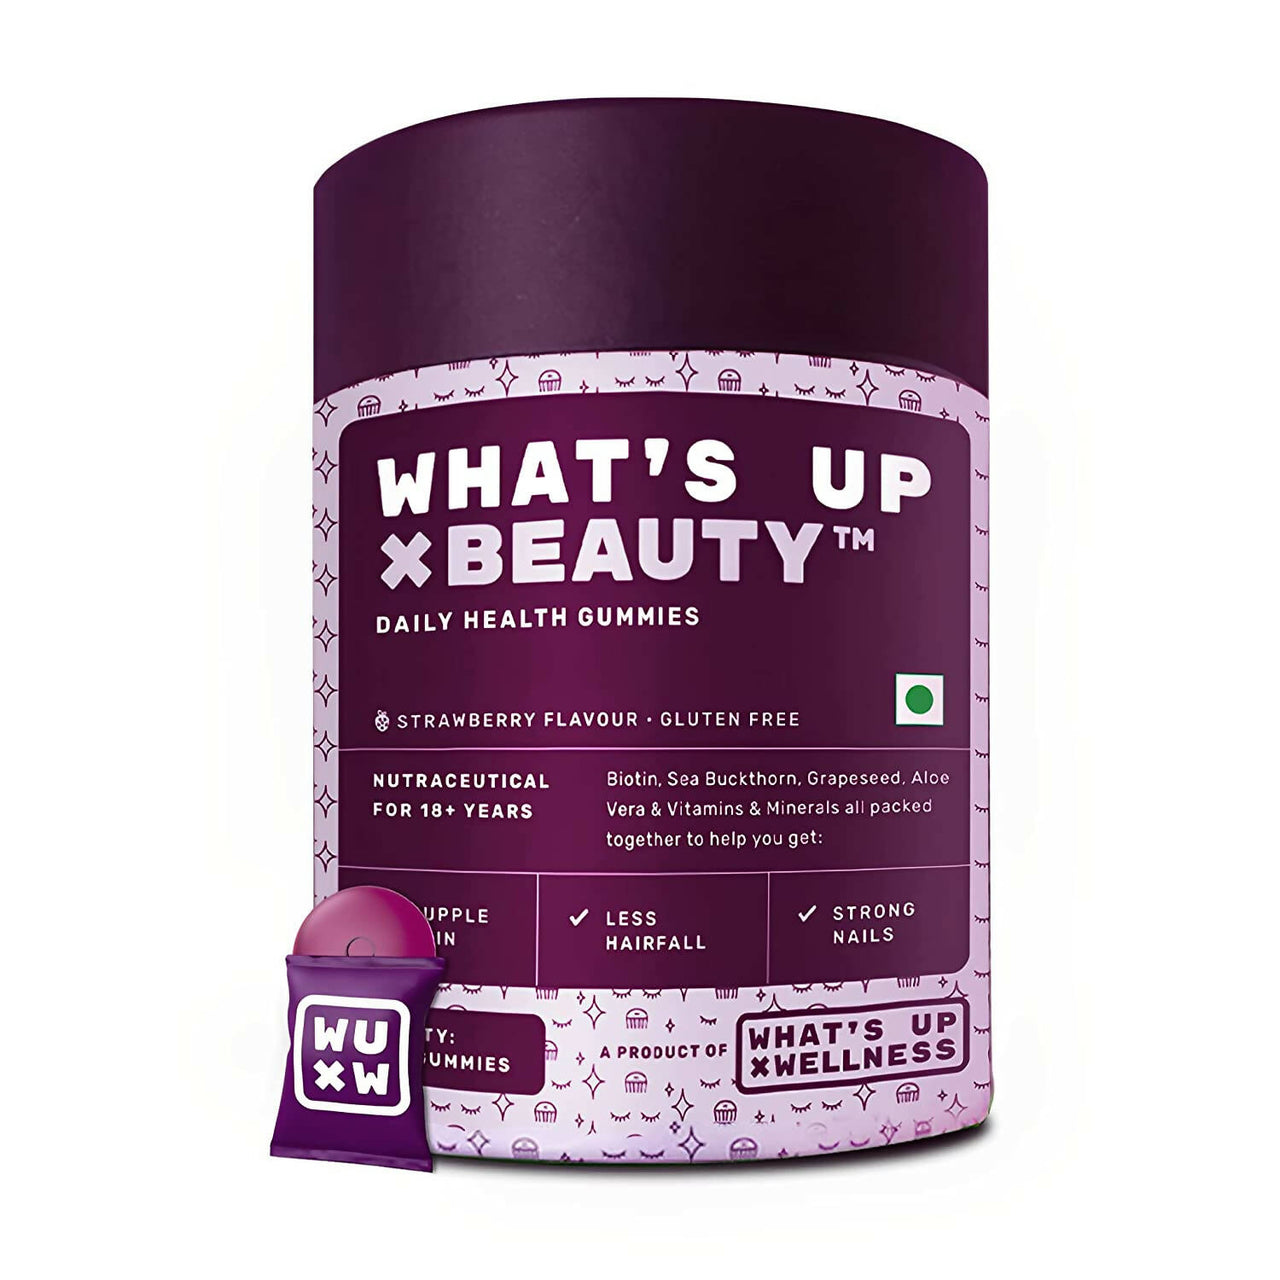 What’s Up Wellness Beauty Skin & Hair Gummies - Distacart